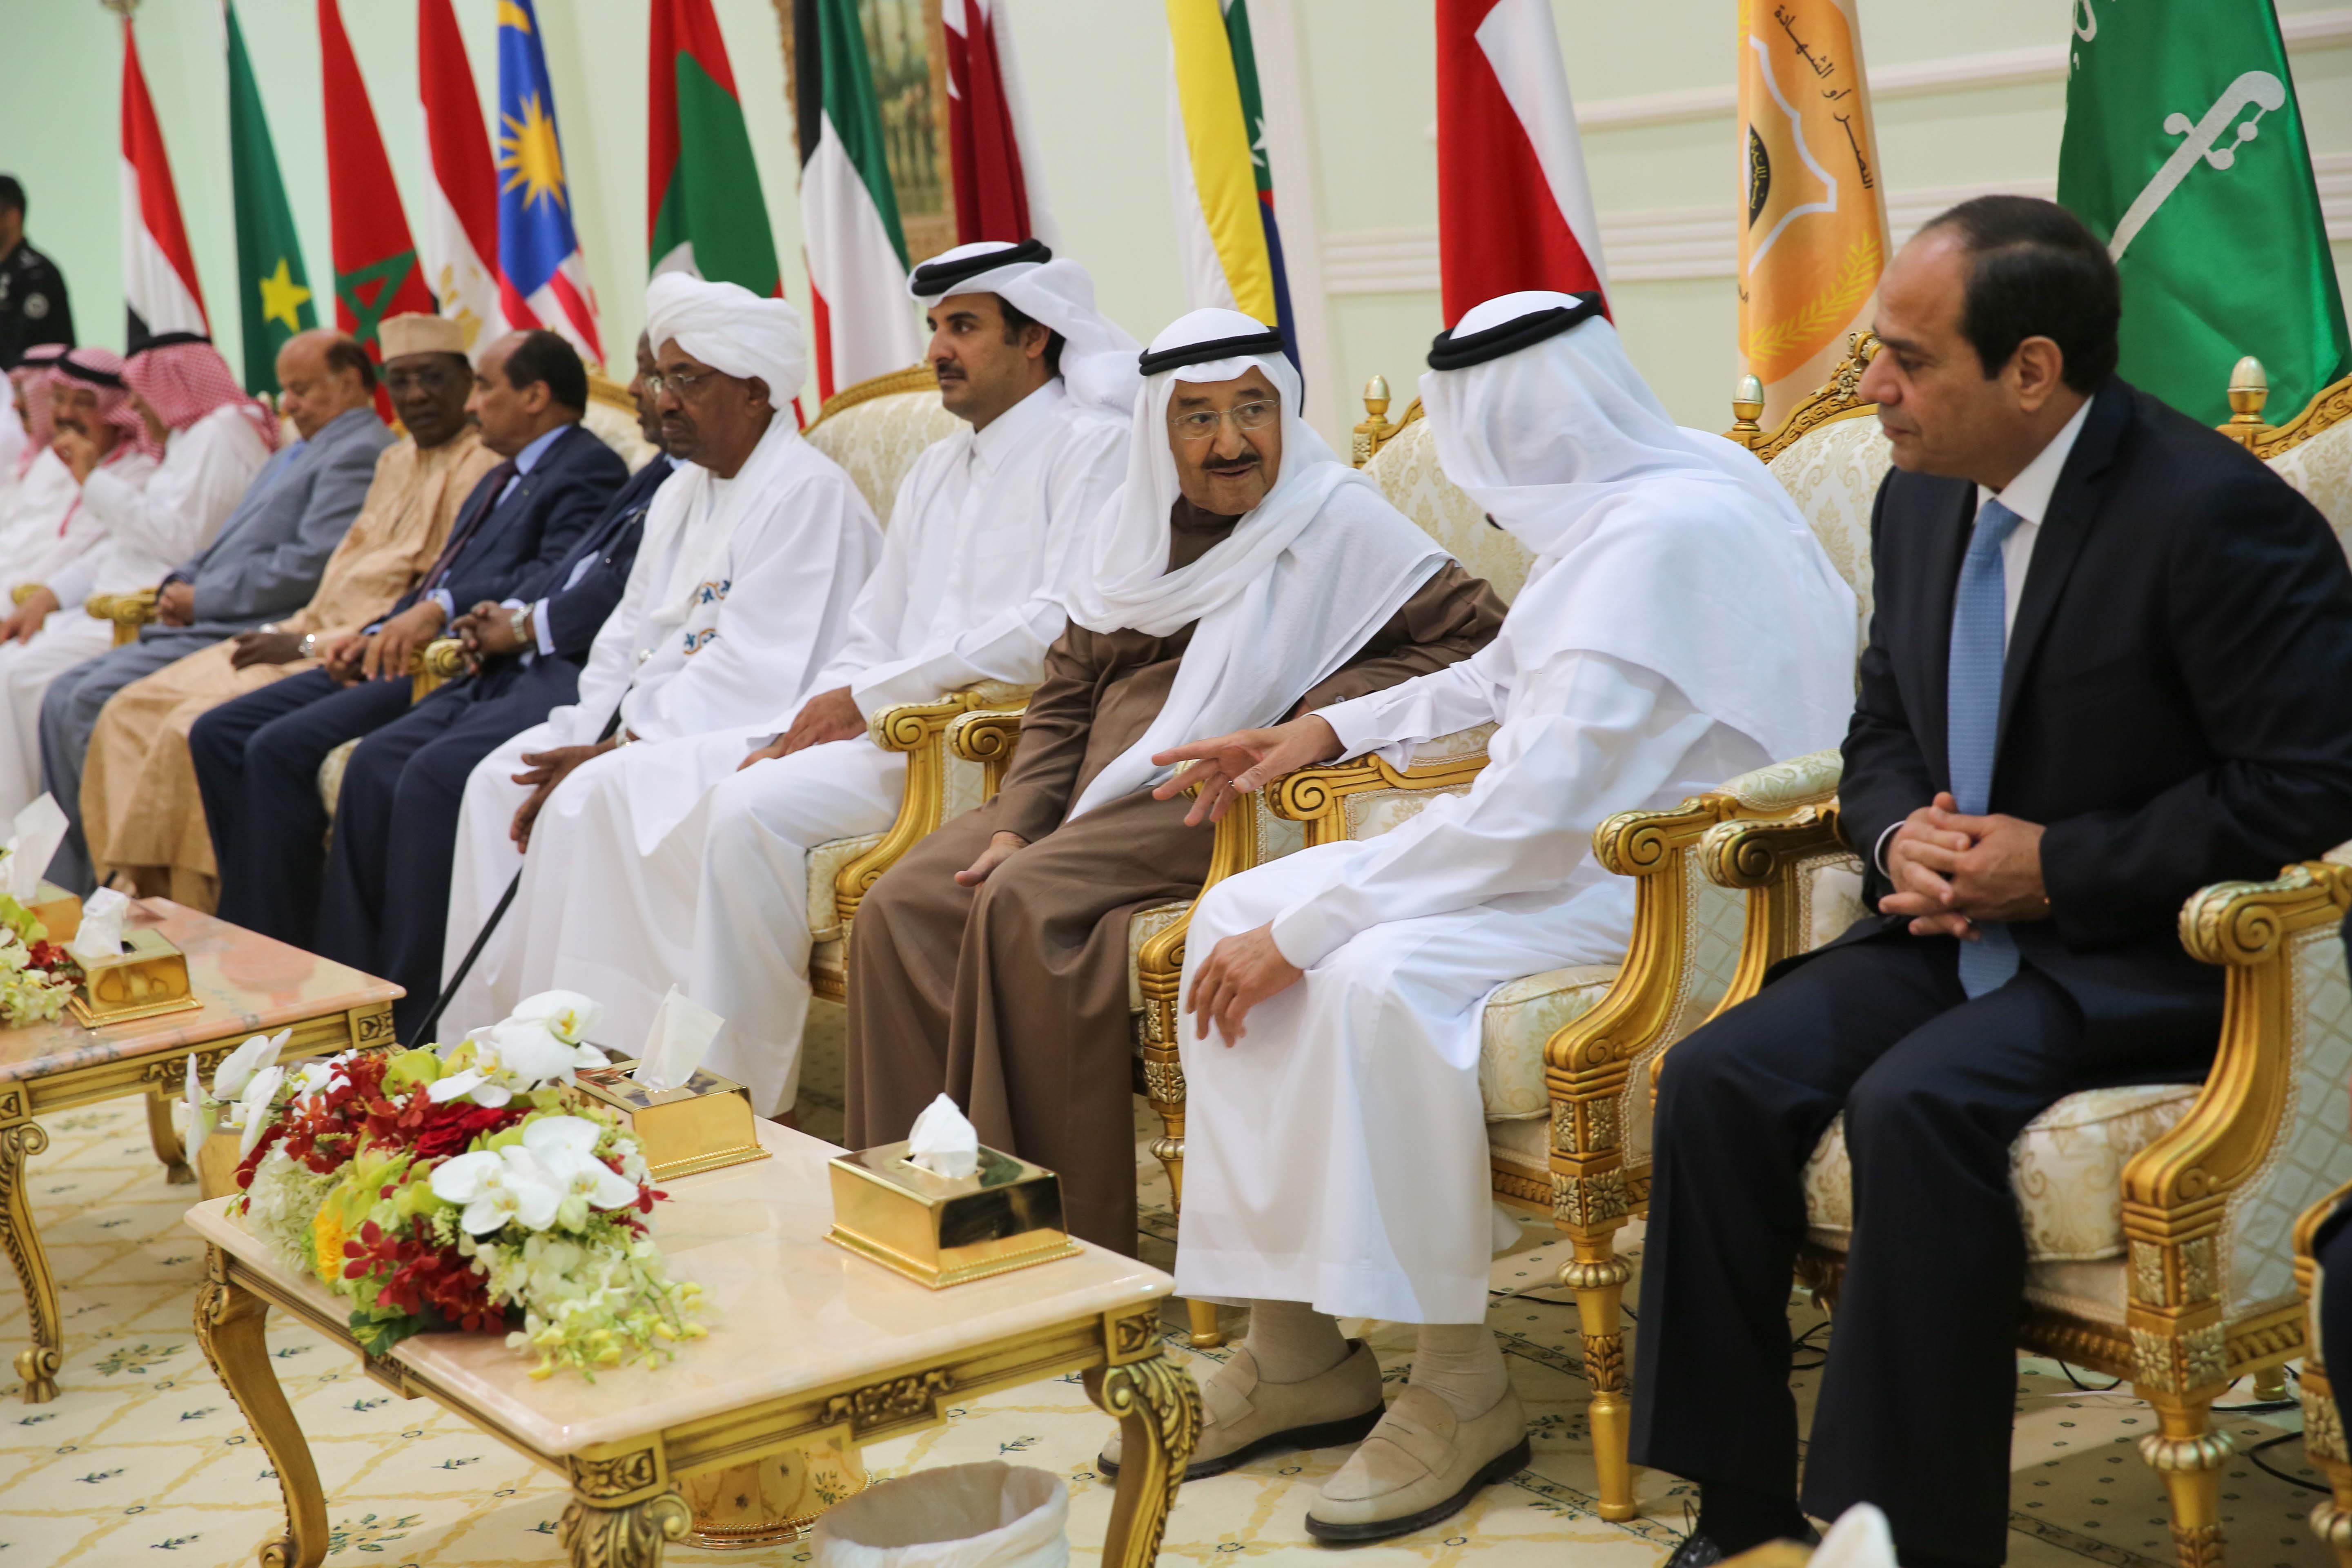 Arabie Saoudite: Macky Sall à la cérémonie de clôture des manœuvres "Tonnerre du nord" (images)